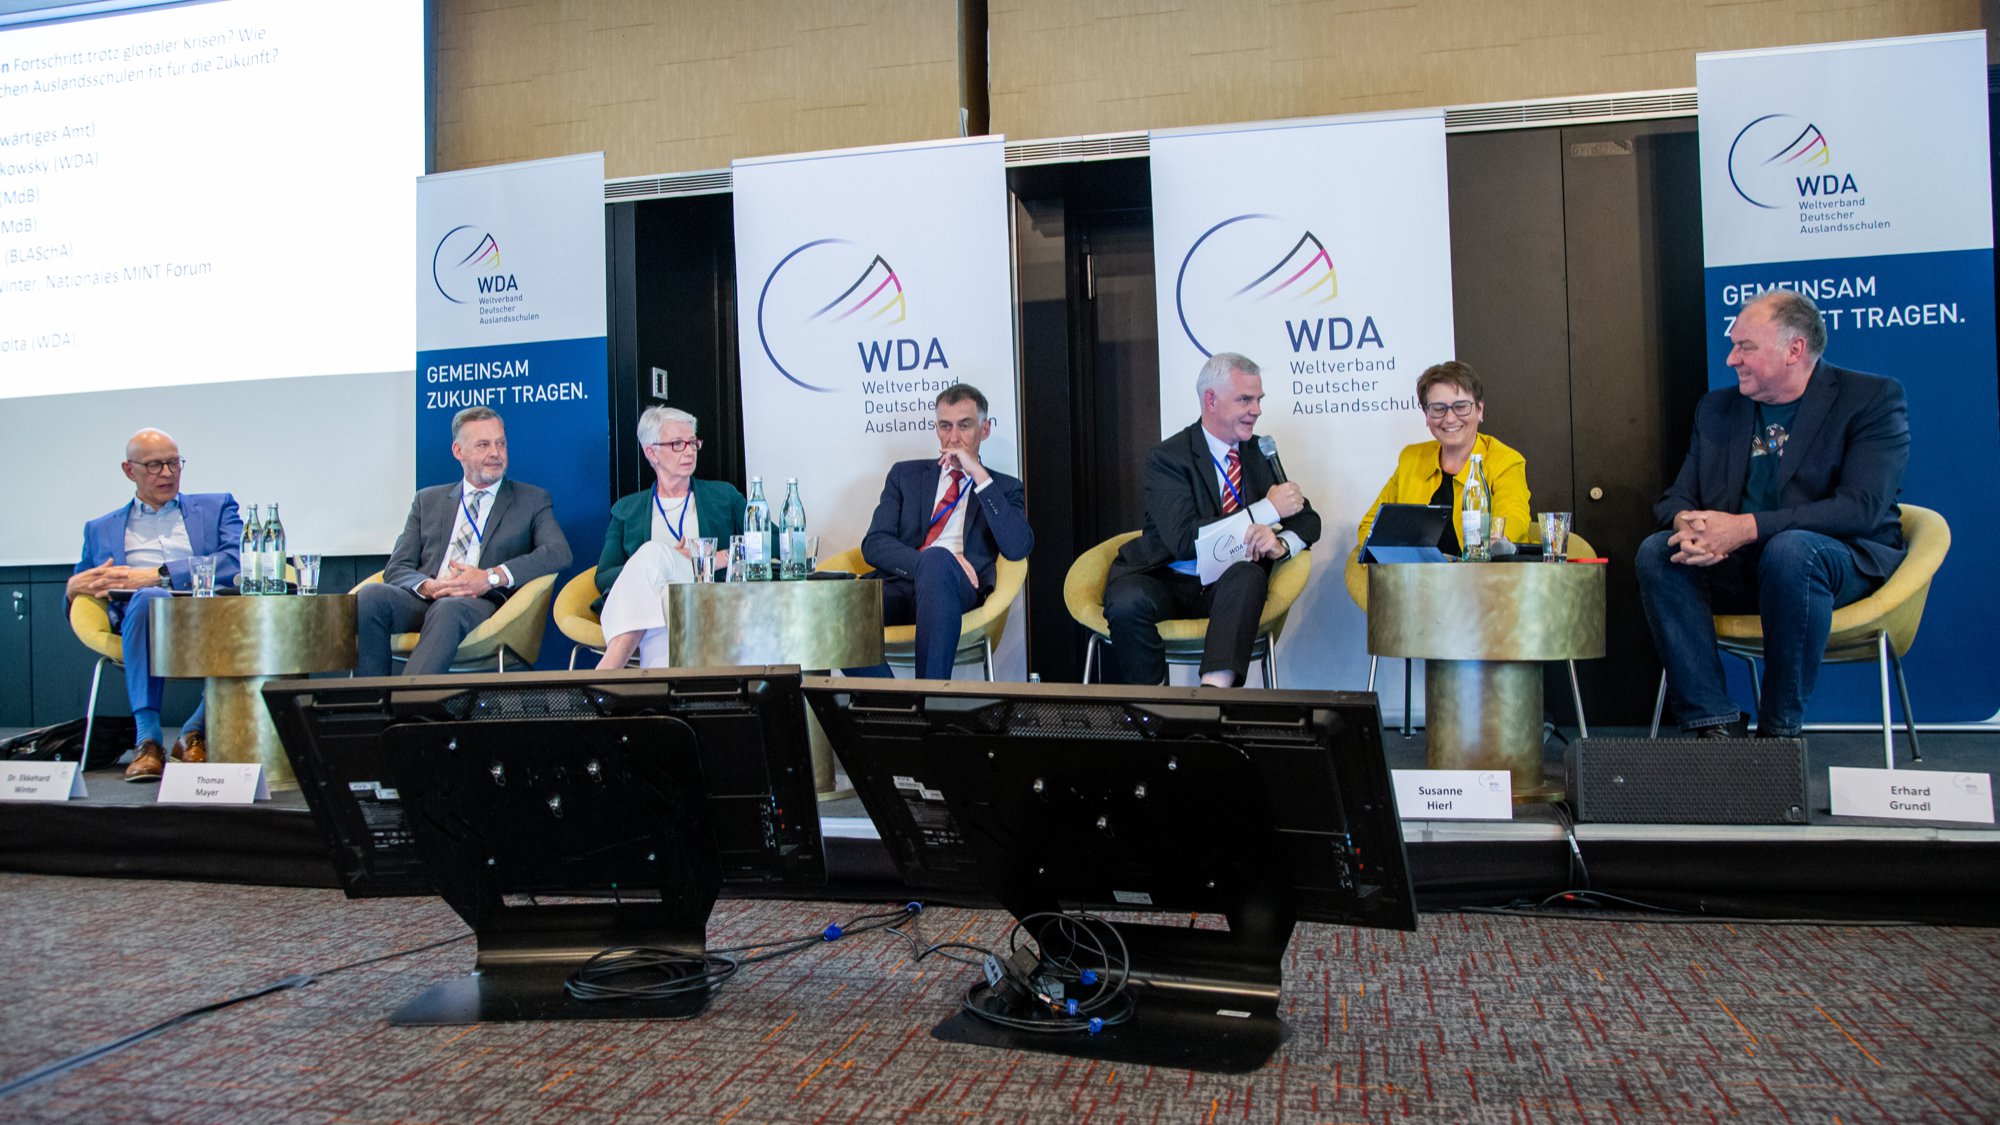 Fit für die Zukunft: WDA-Symposium unterstreicht, was die Deutschen Auslandsschulen brauchen